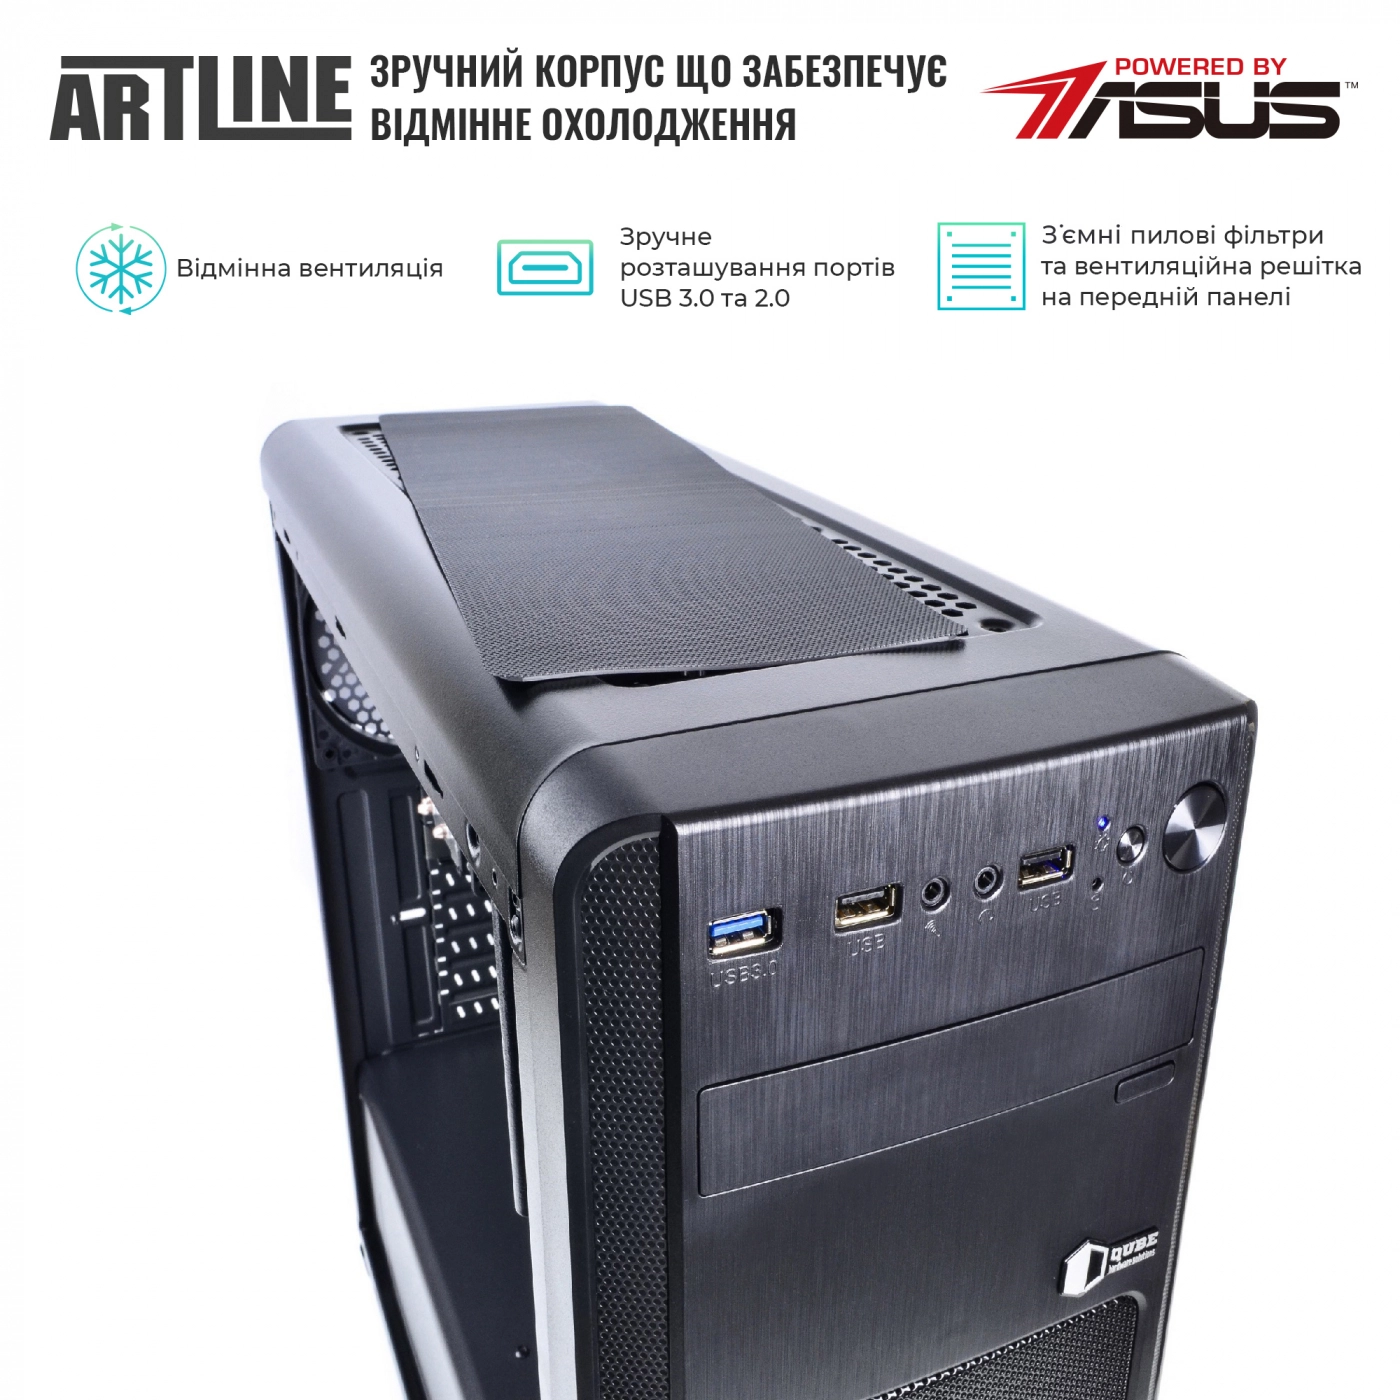 Купить Сервер ARTLINE Business T25v29 - фото 2